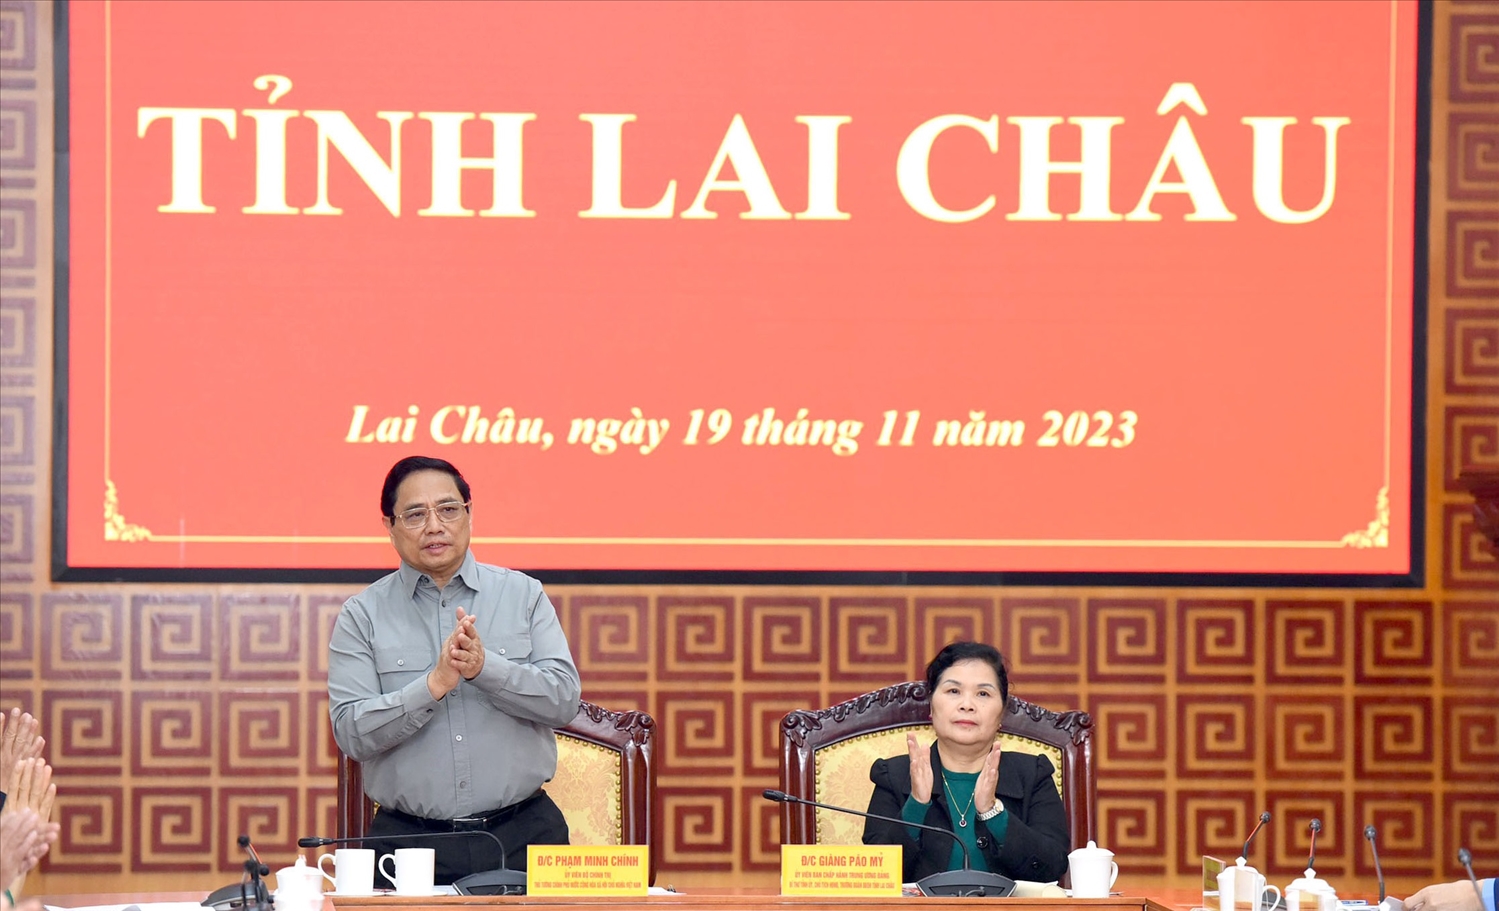 Thủ tướng đánh giá cao những kết quả mà tỉnh Lai Châu đã đạt được trong phát triển kinh tế-xã hội, an ninh quốc phòng thời gian qua